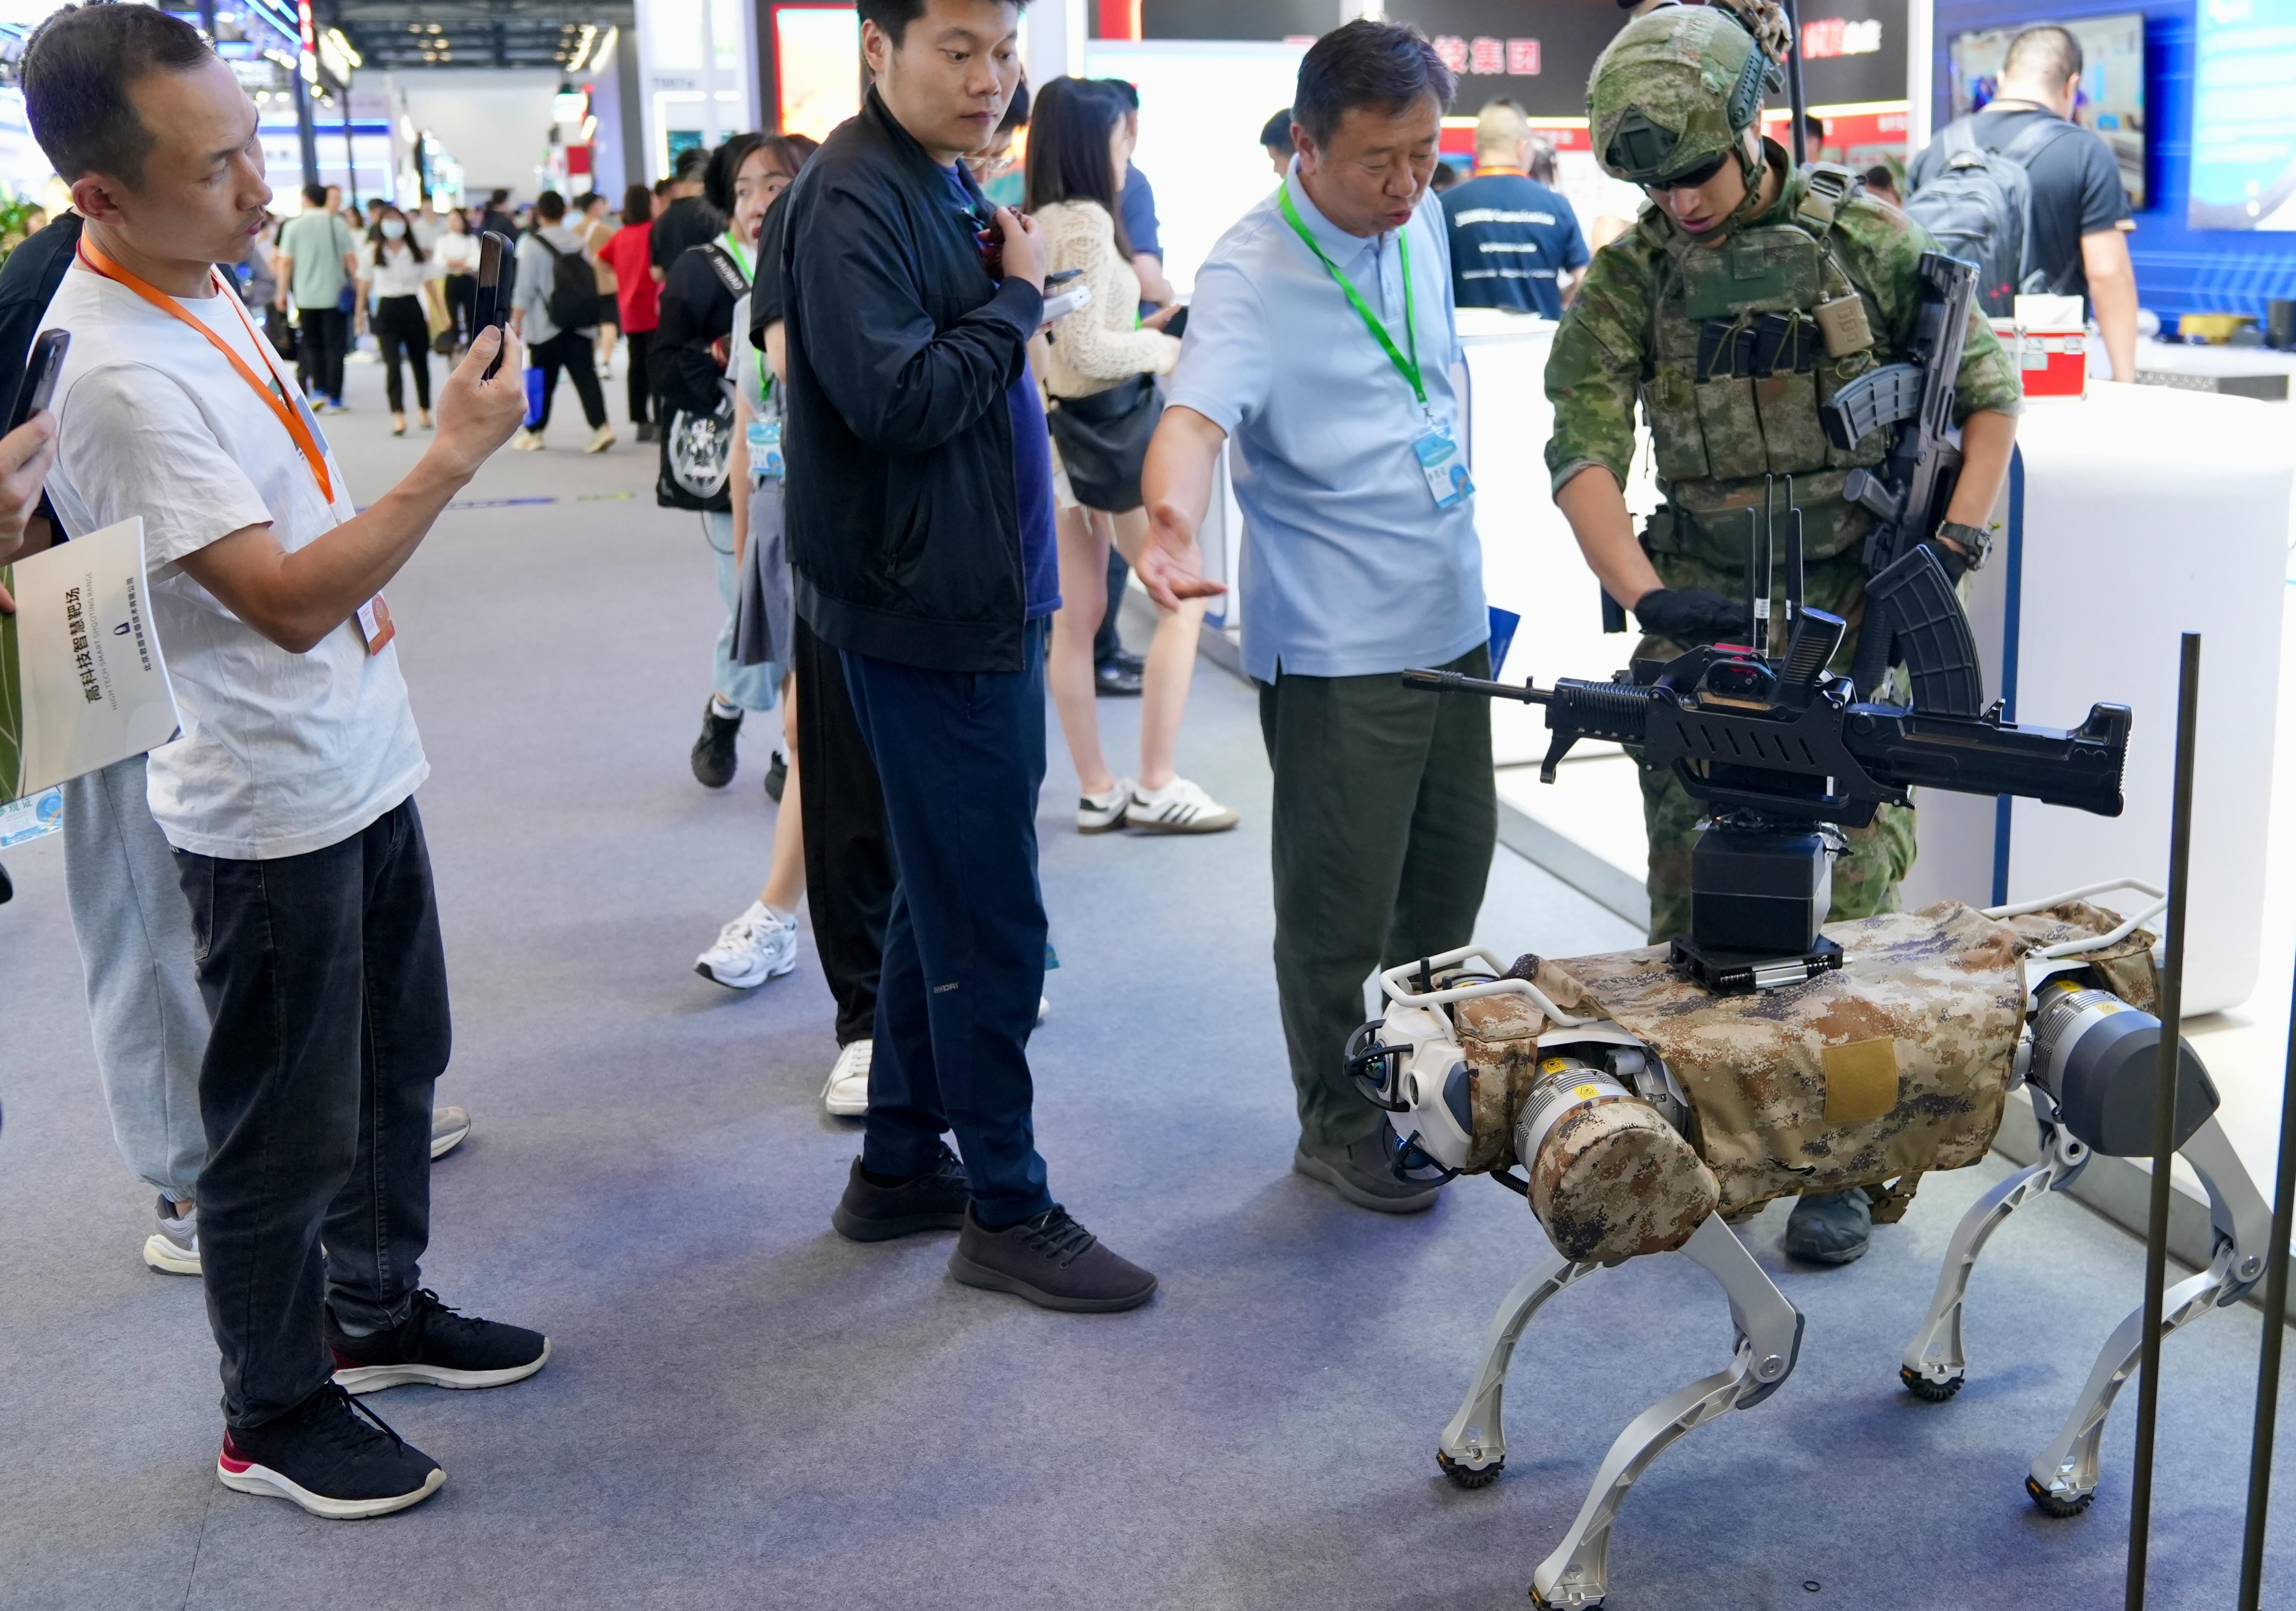 战斗机器狗未来是否会投入城市巷战备受关注。图为在今年5月举行的第九届中国（北京）军事智能技术装备博览会上所展示的一款战斗机器狗。中新社